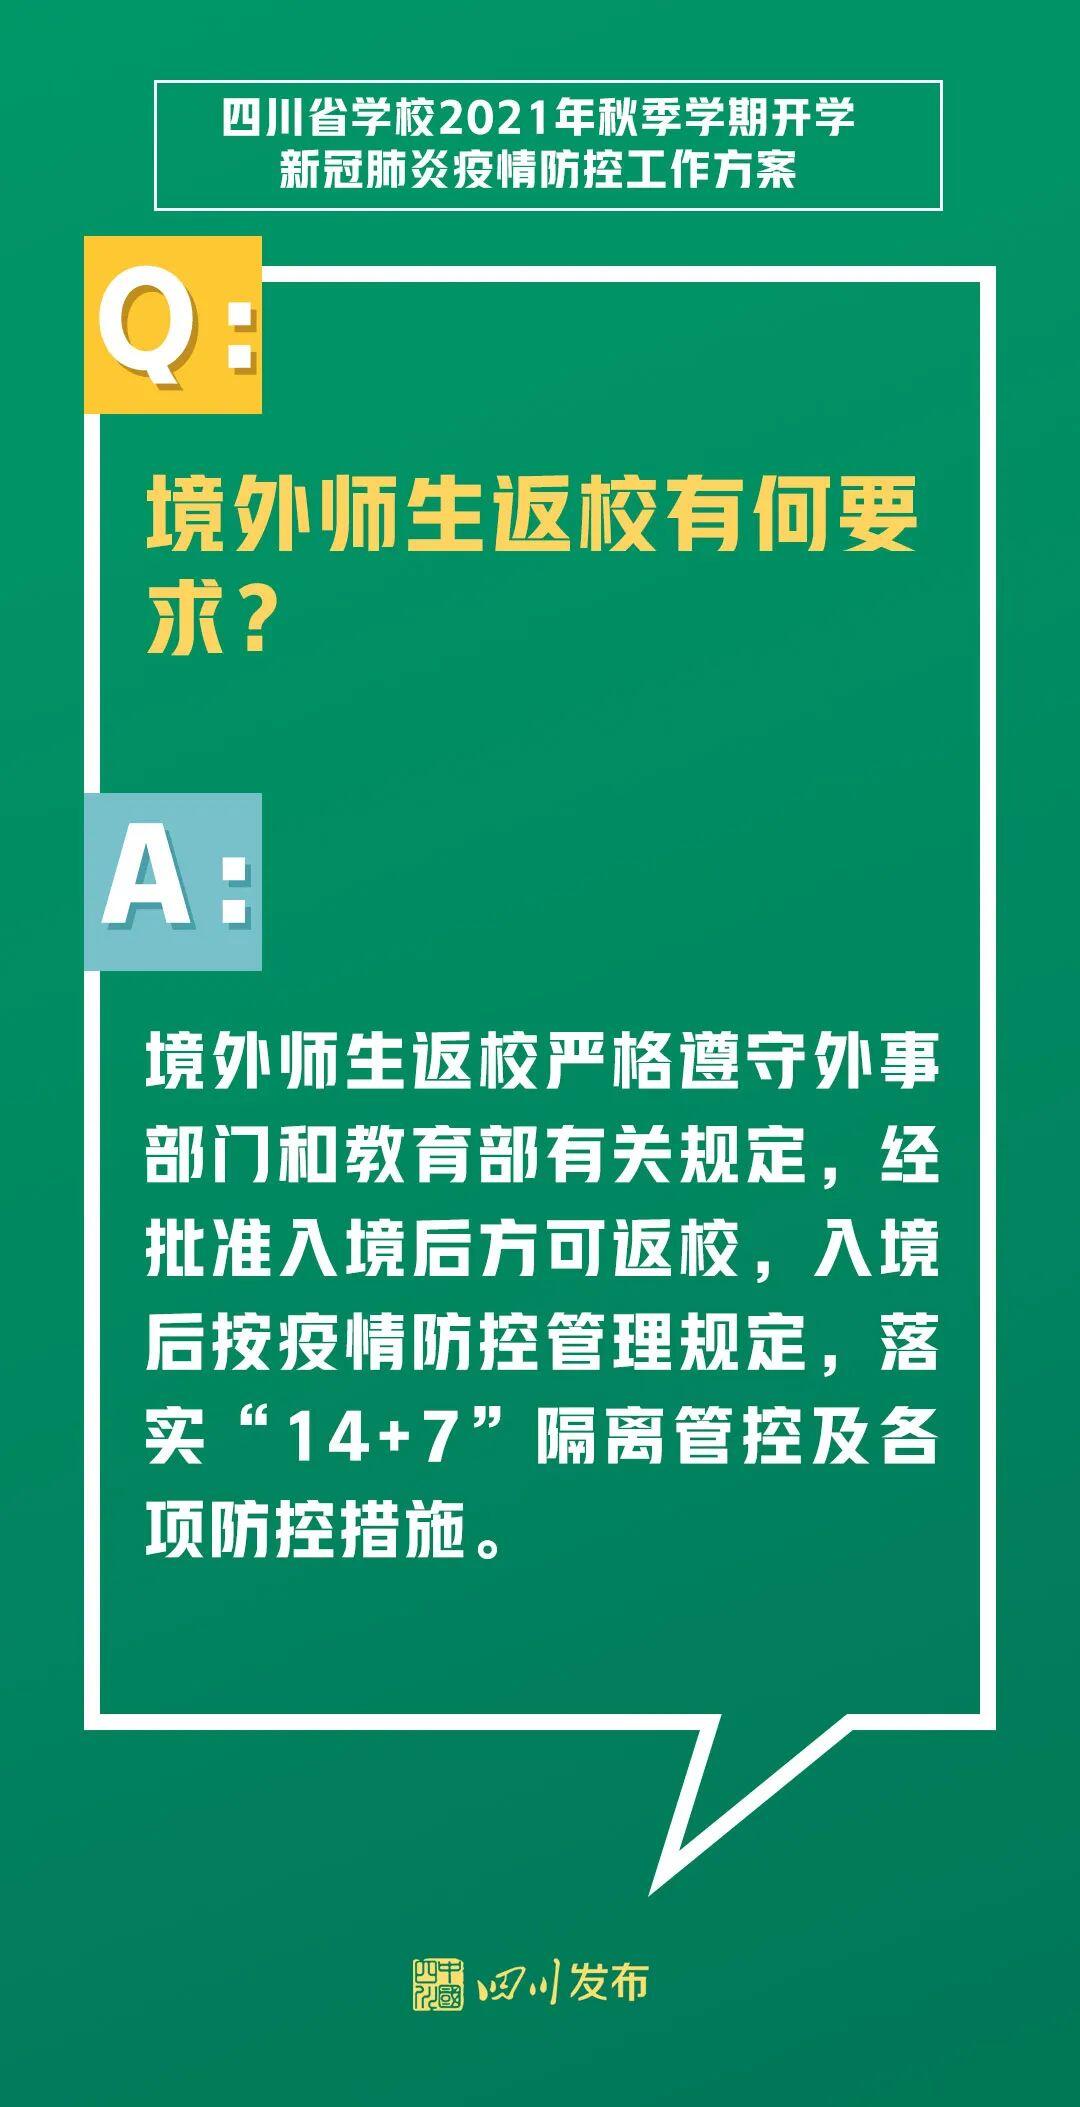 四川省教育厅是怎么回事，关于四川省教育厅延迟开学的新消息。